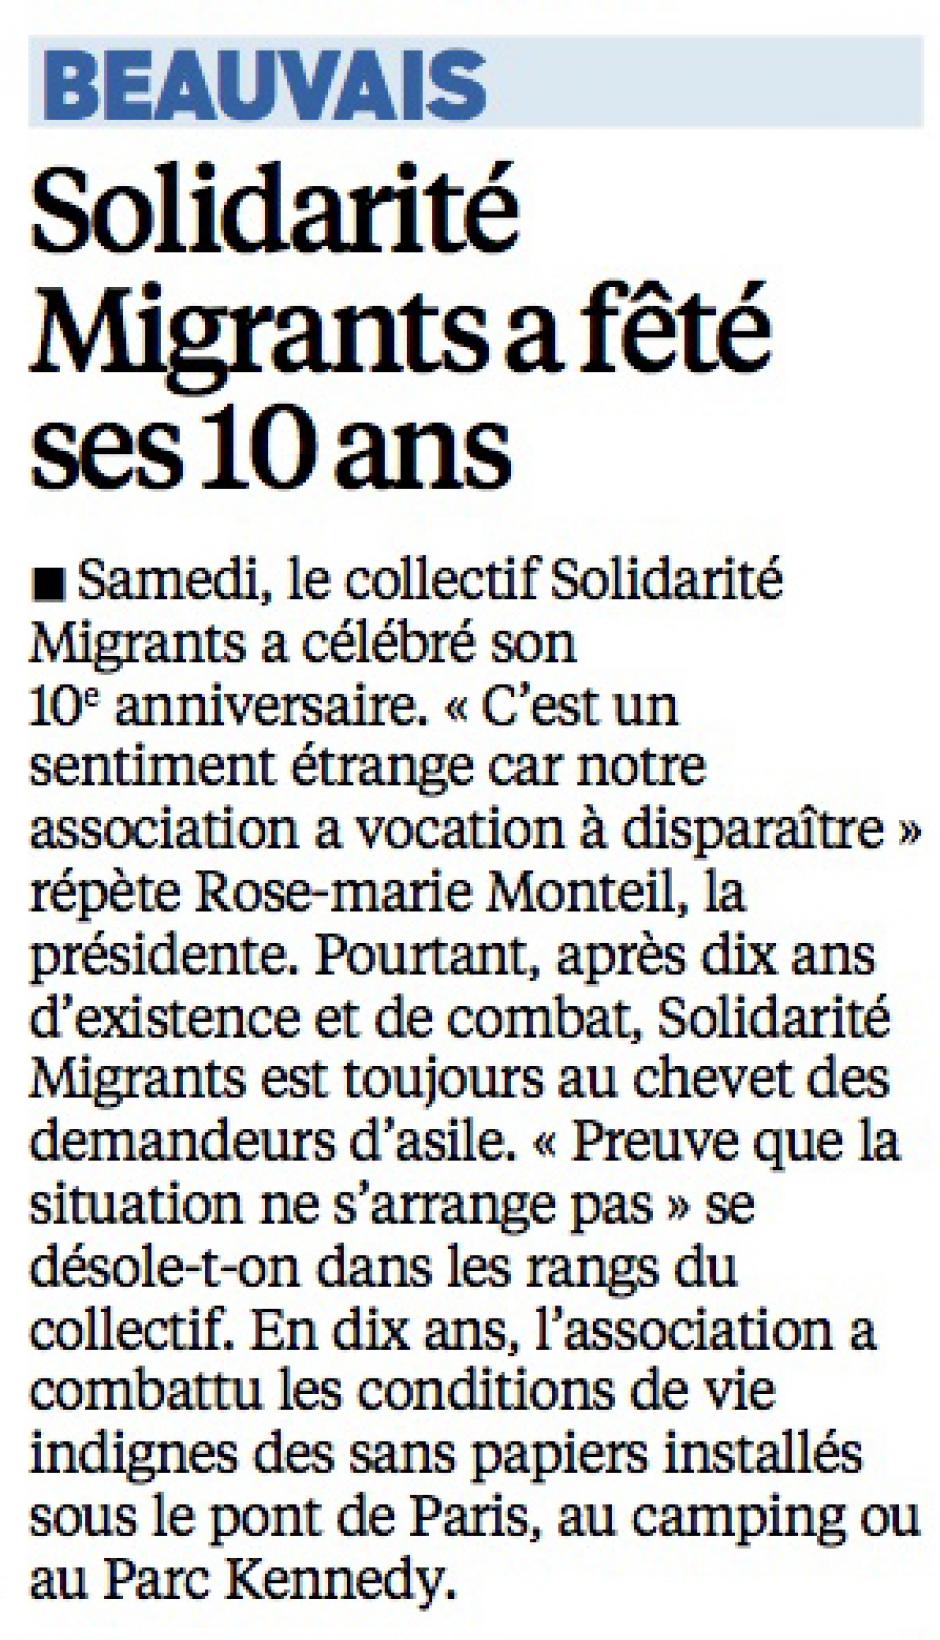 20140929-LeP-Beauvais-Solidarité Migrants a fêté ses dix ans